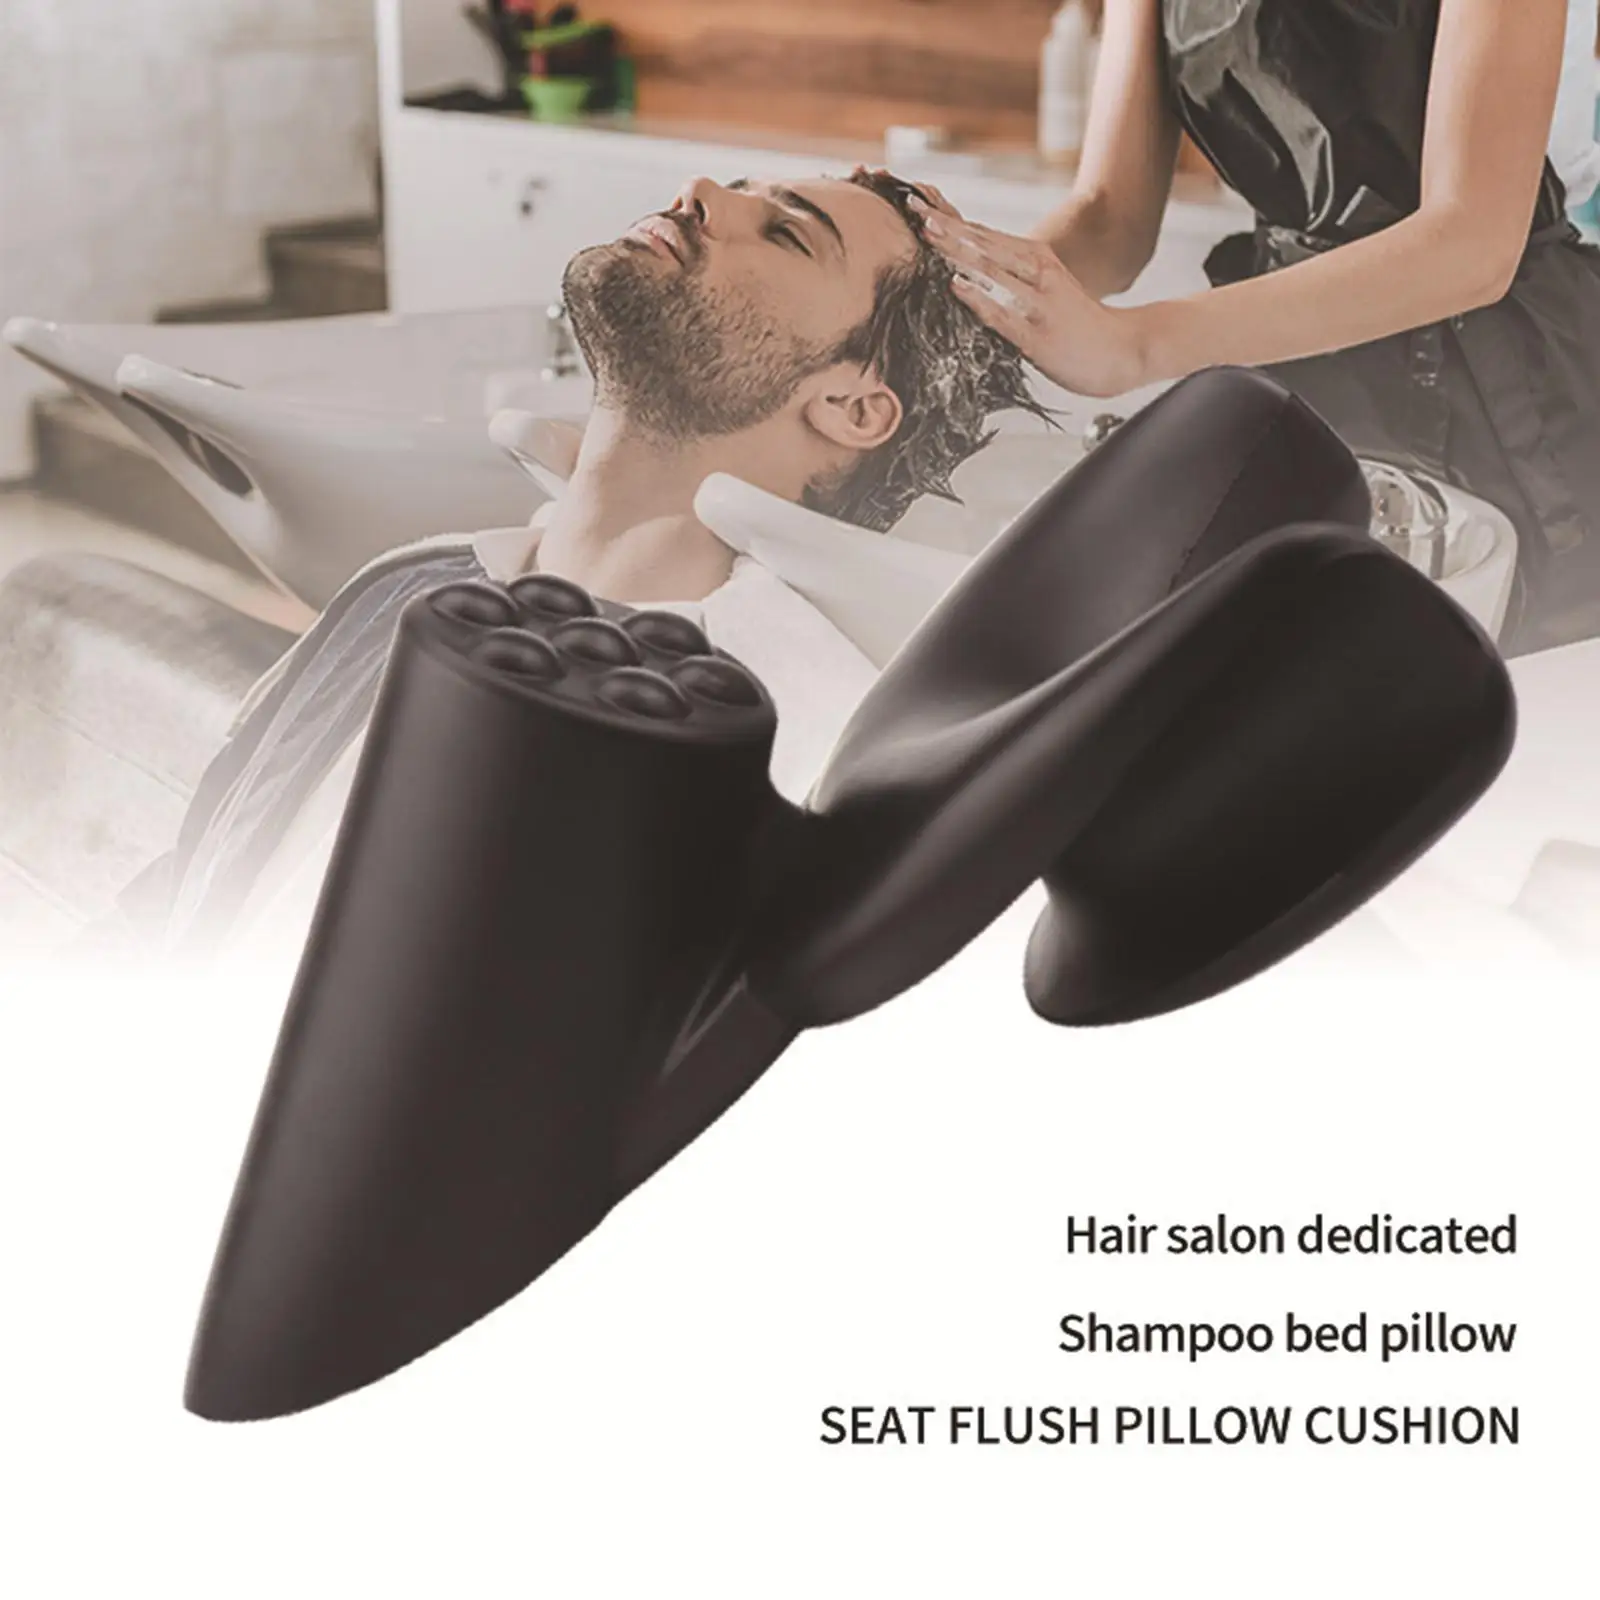 Salon Neck Rest Cushion Flush  Cushion Soft Hair Salon Washing Sink Basin Tool Hair Washing  for Salon Accessories